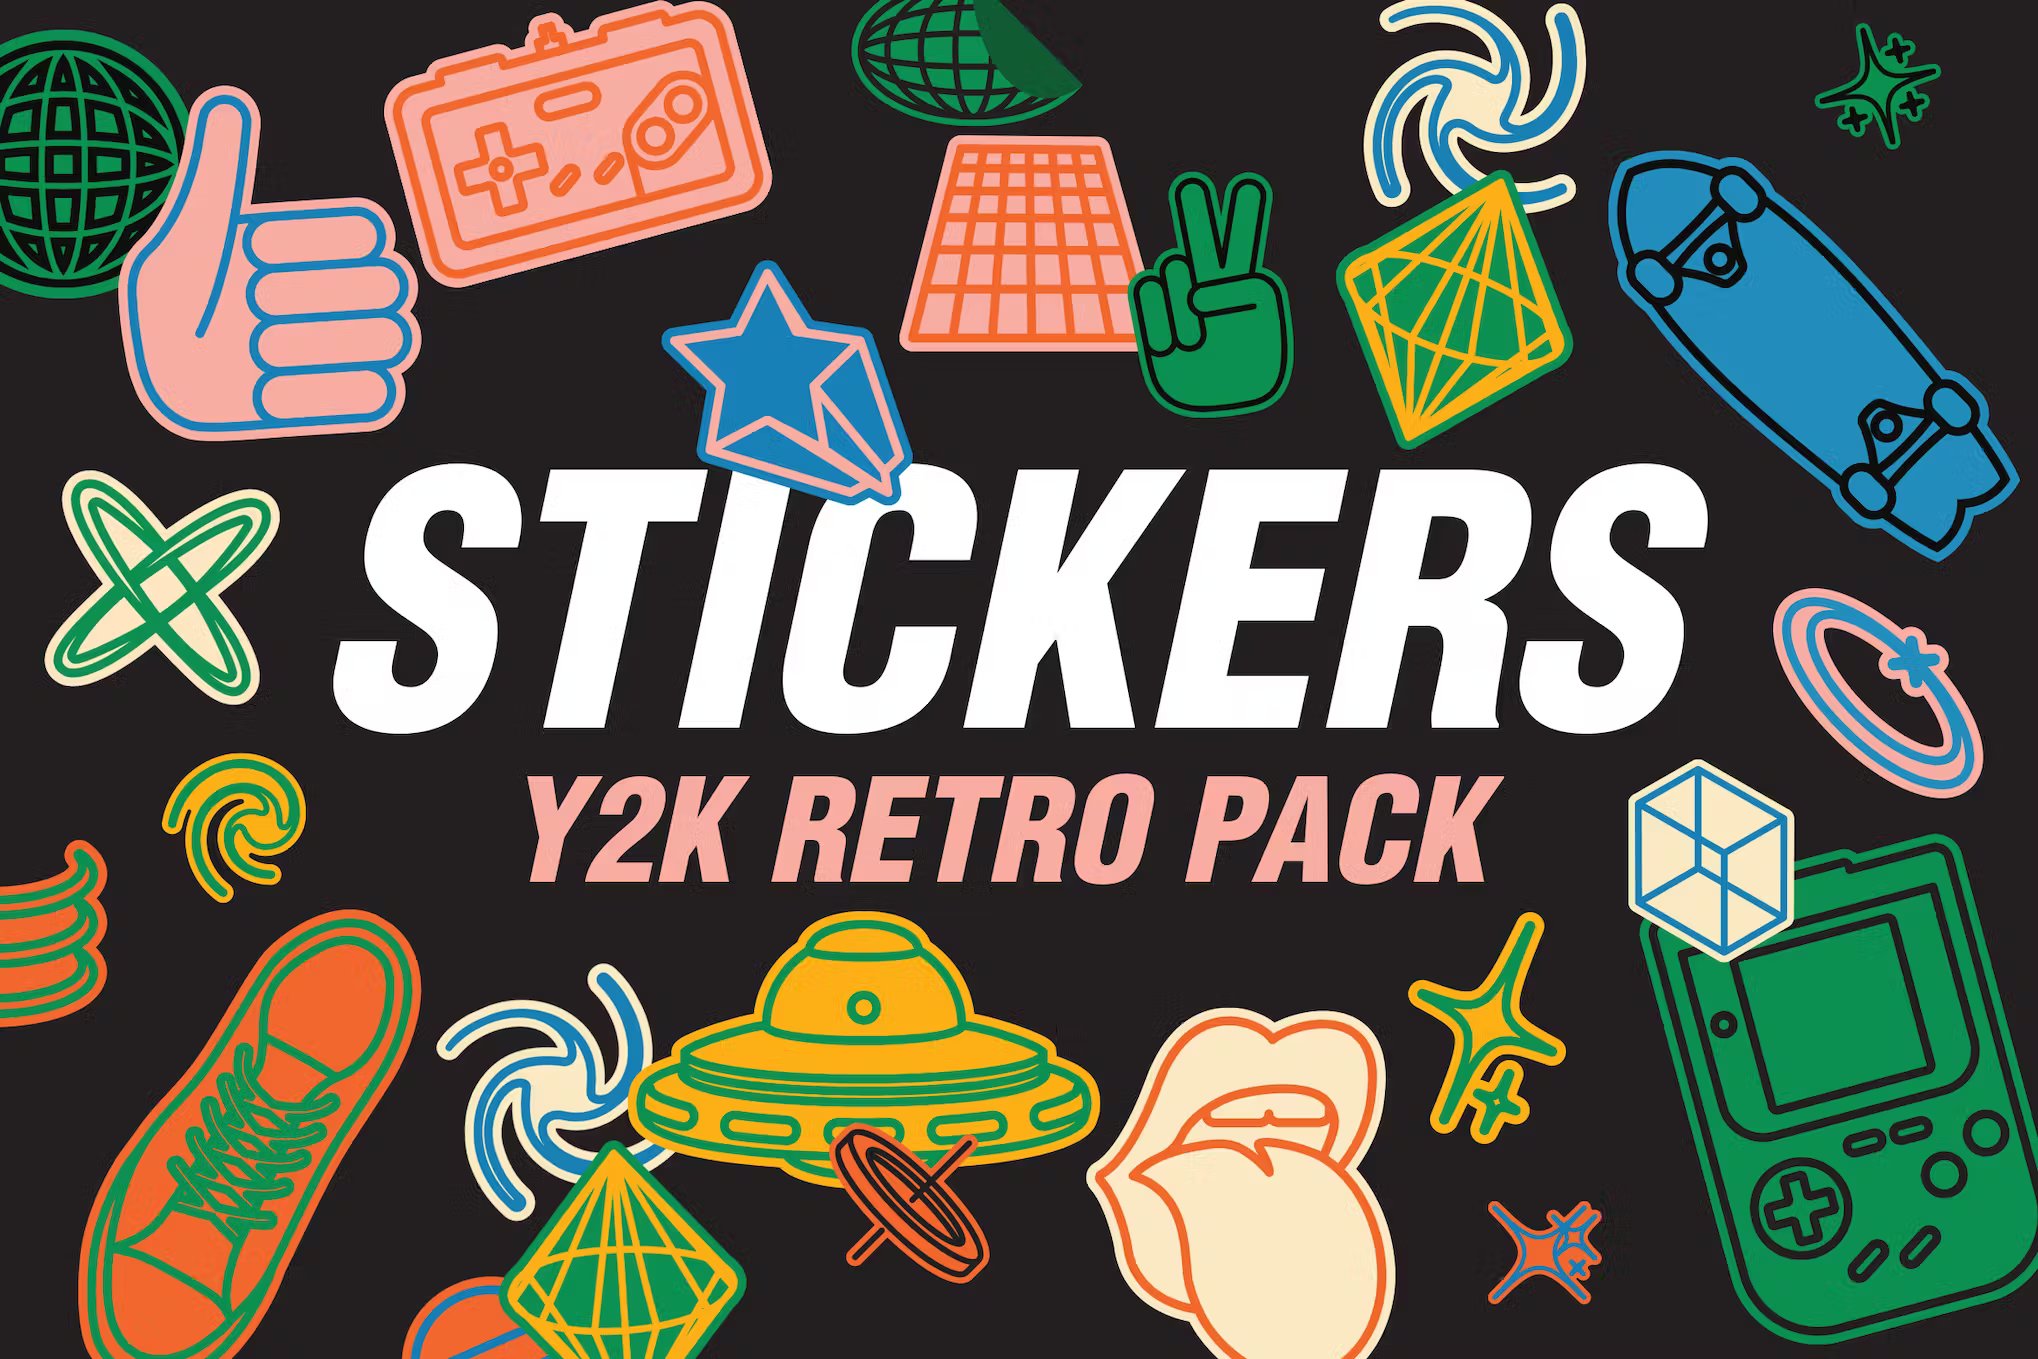 25张复古怀旧气息PNG、AI矢量贴纸 25 Y2K Retro Stickers Pack 图片素材 第1张